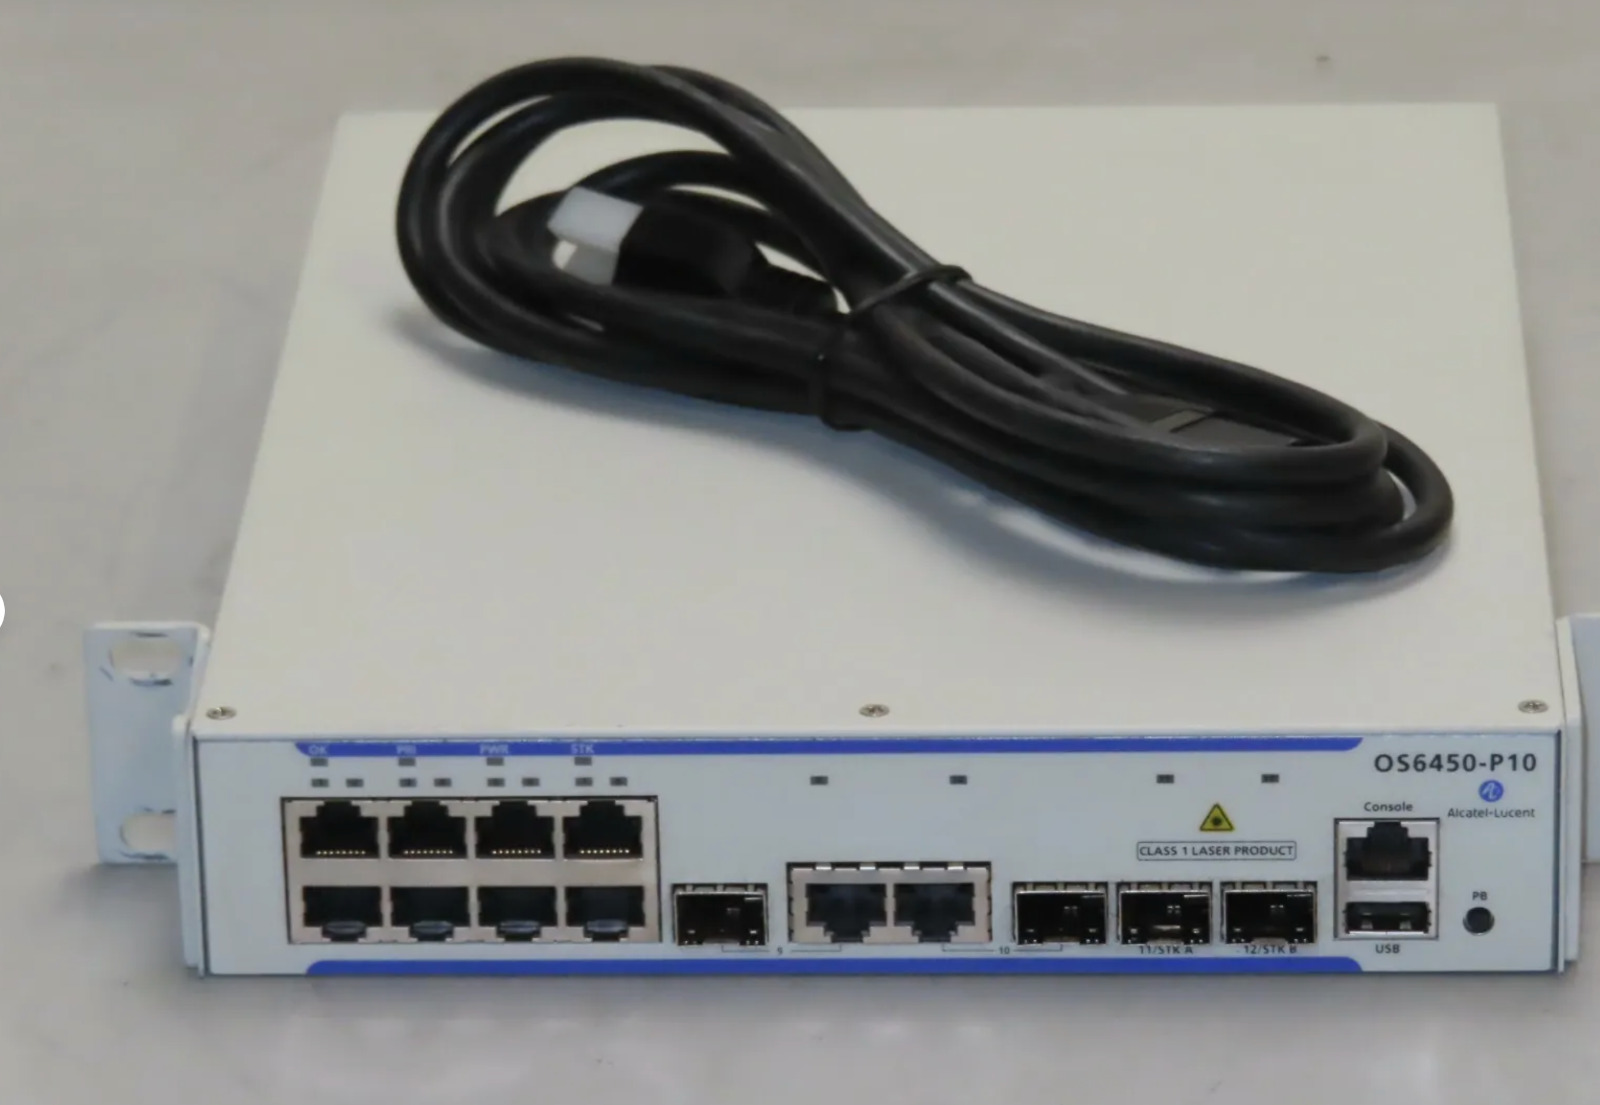 Alcatel-Lucent OmniSwitch OS6350-P10 8x10/100BaseT PoE +2x1Gb RJ45/SFP 1U Switch